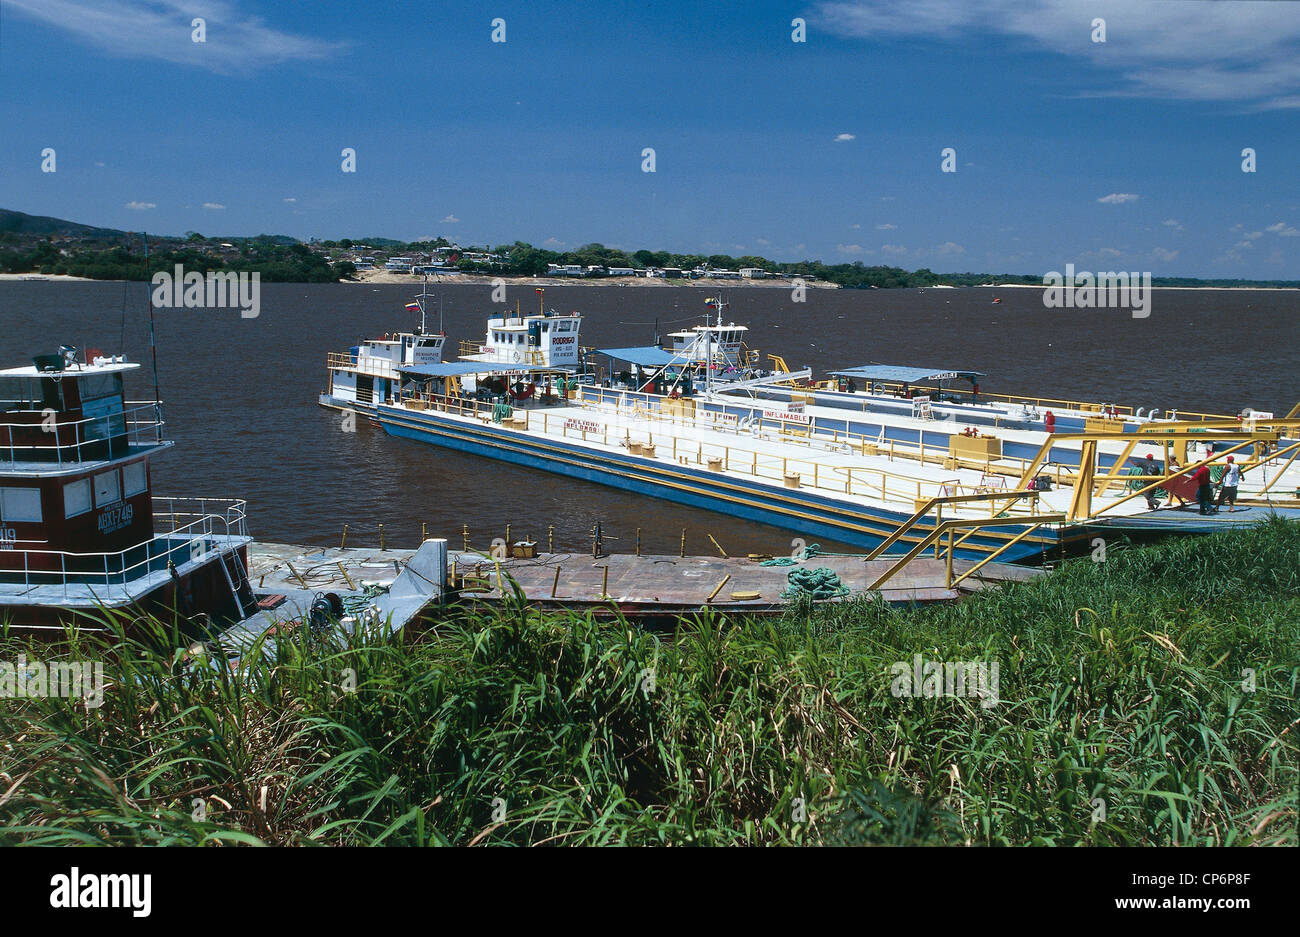 Venezuela - Guayana - Amazonas - Puerto Ayacucho. A boat docked at a pier on the Orinoco River Stock Photo